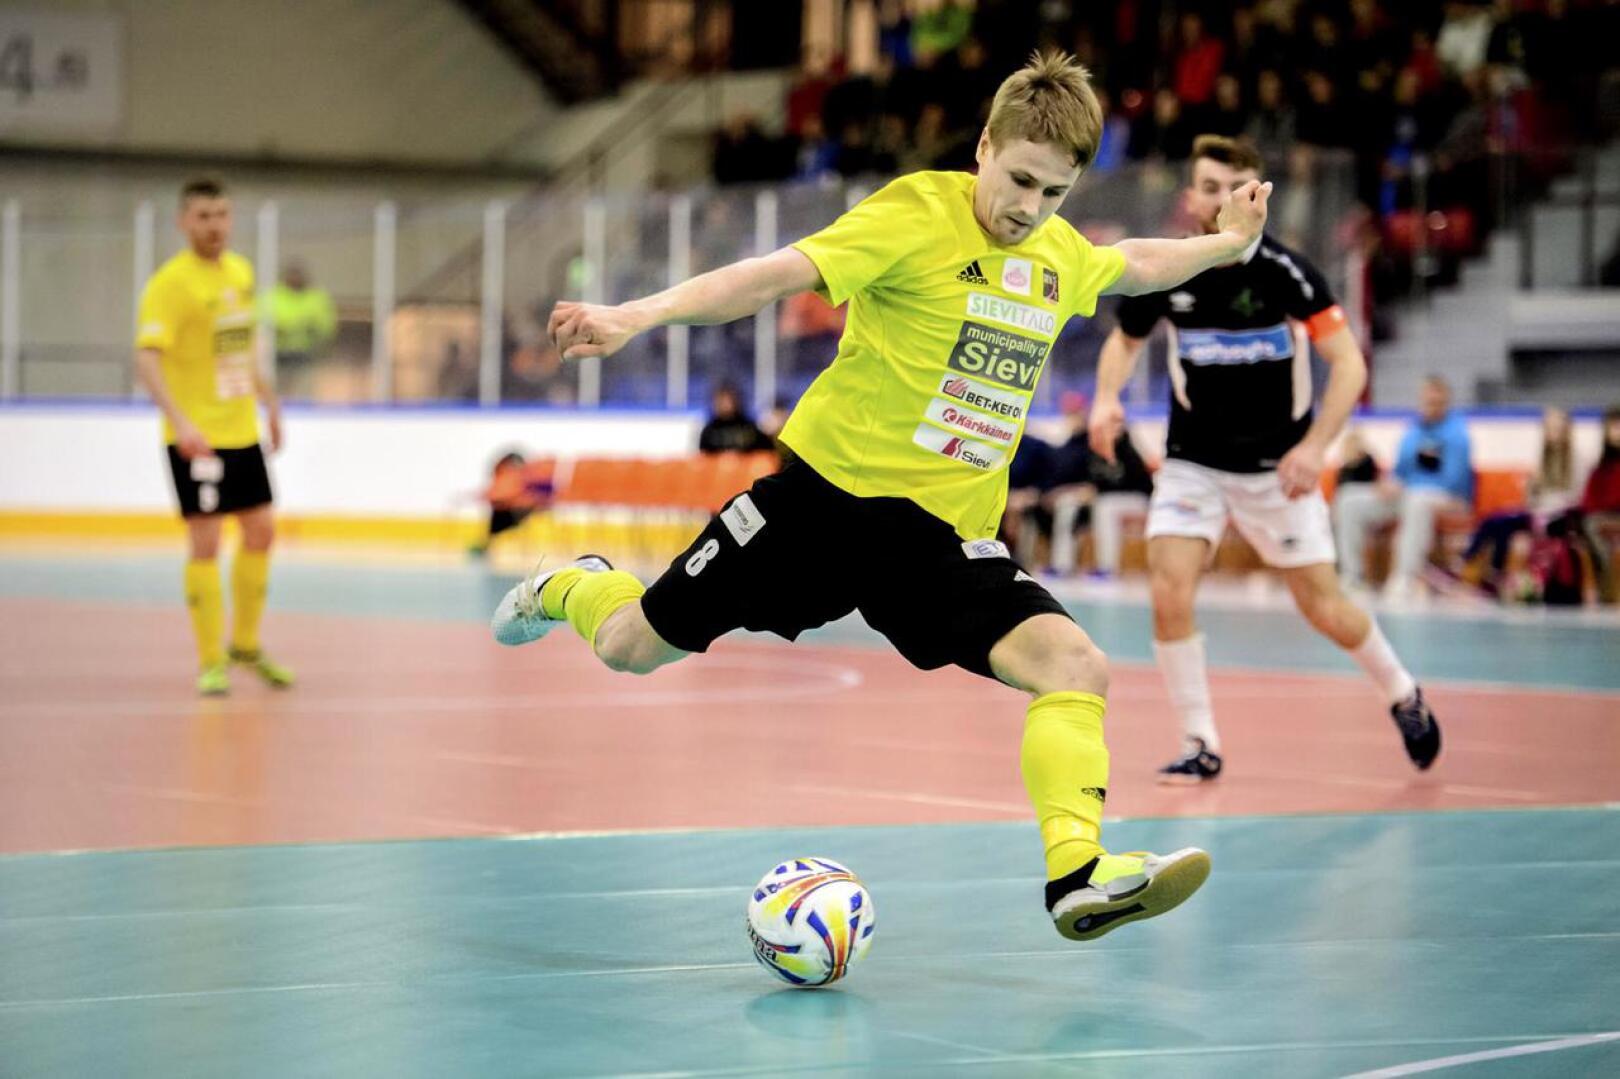 Sievi FS:n keltapaidan Tornion Palloveikkoihin täksi kaudeksi vaihtanut Jarmo Junno on kunnostautunut sekä seurajoukkueessa että myös Suomi-paita päällä.